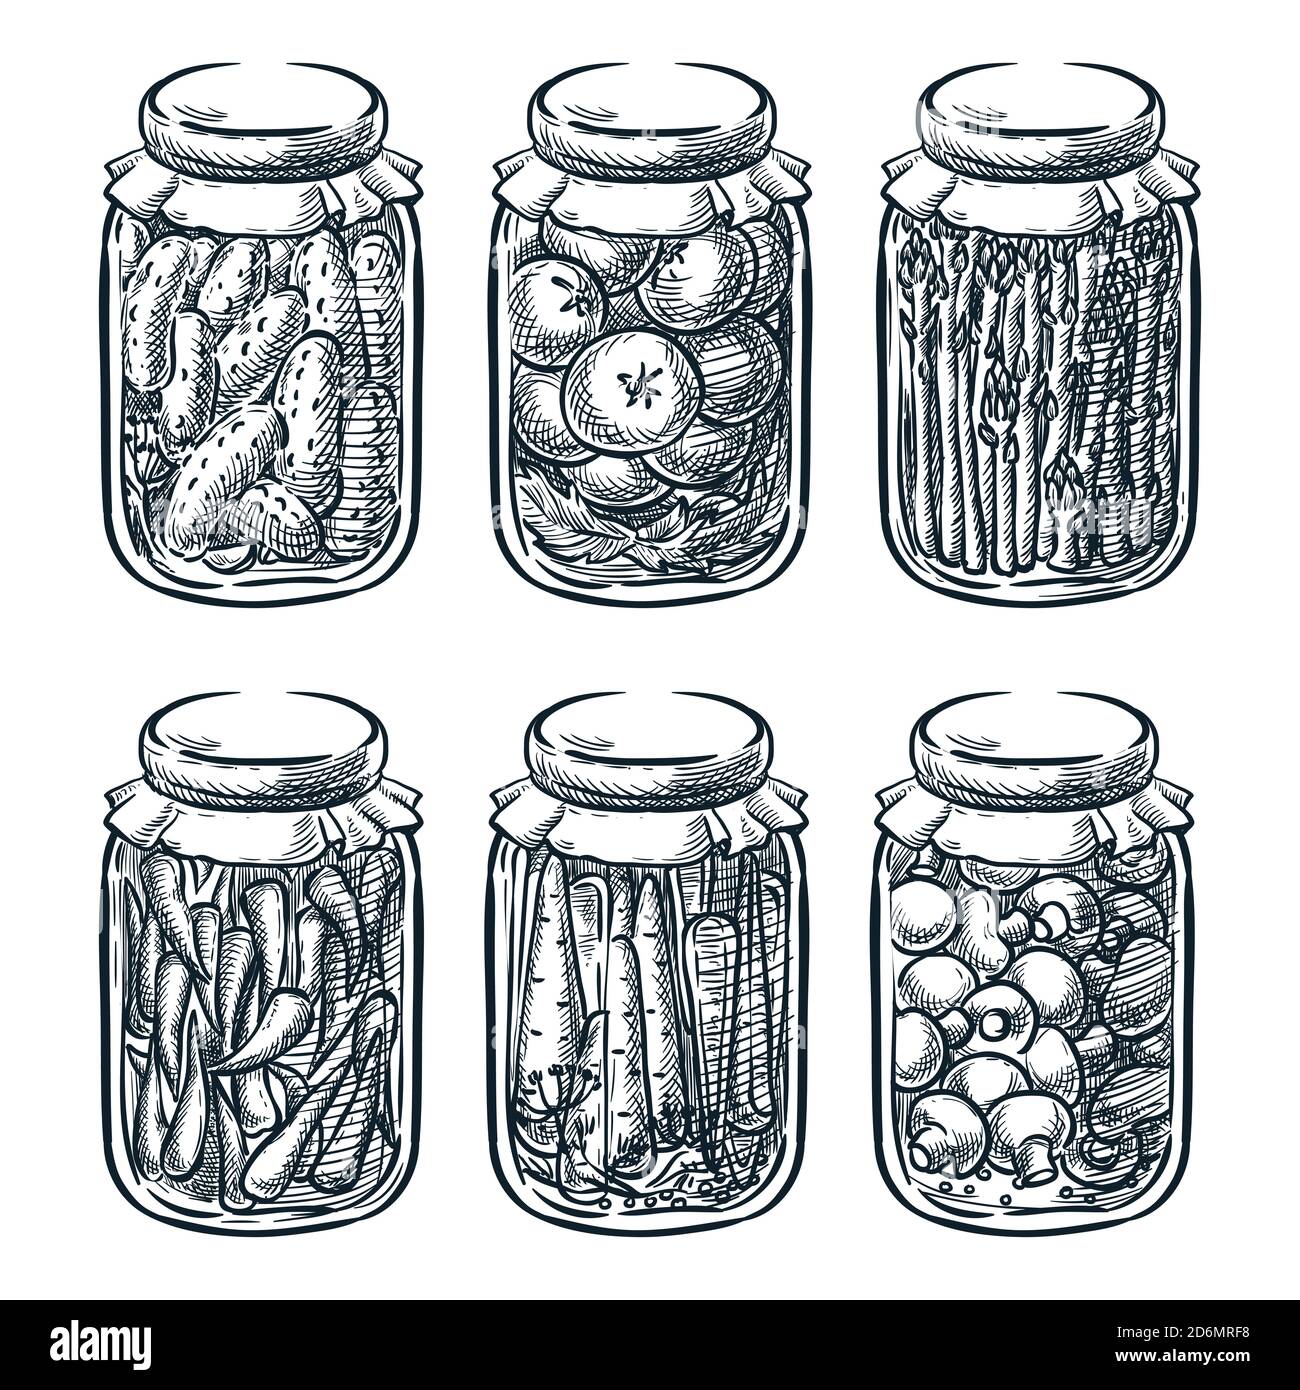 Eingelegtes Gemüse und Pilze im Glas, Vektor-Skizze Illustration. Home Made bewahrt handgezeichnete Design-Elemente. Stock Vektor